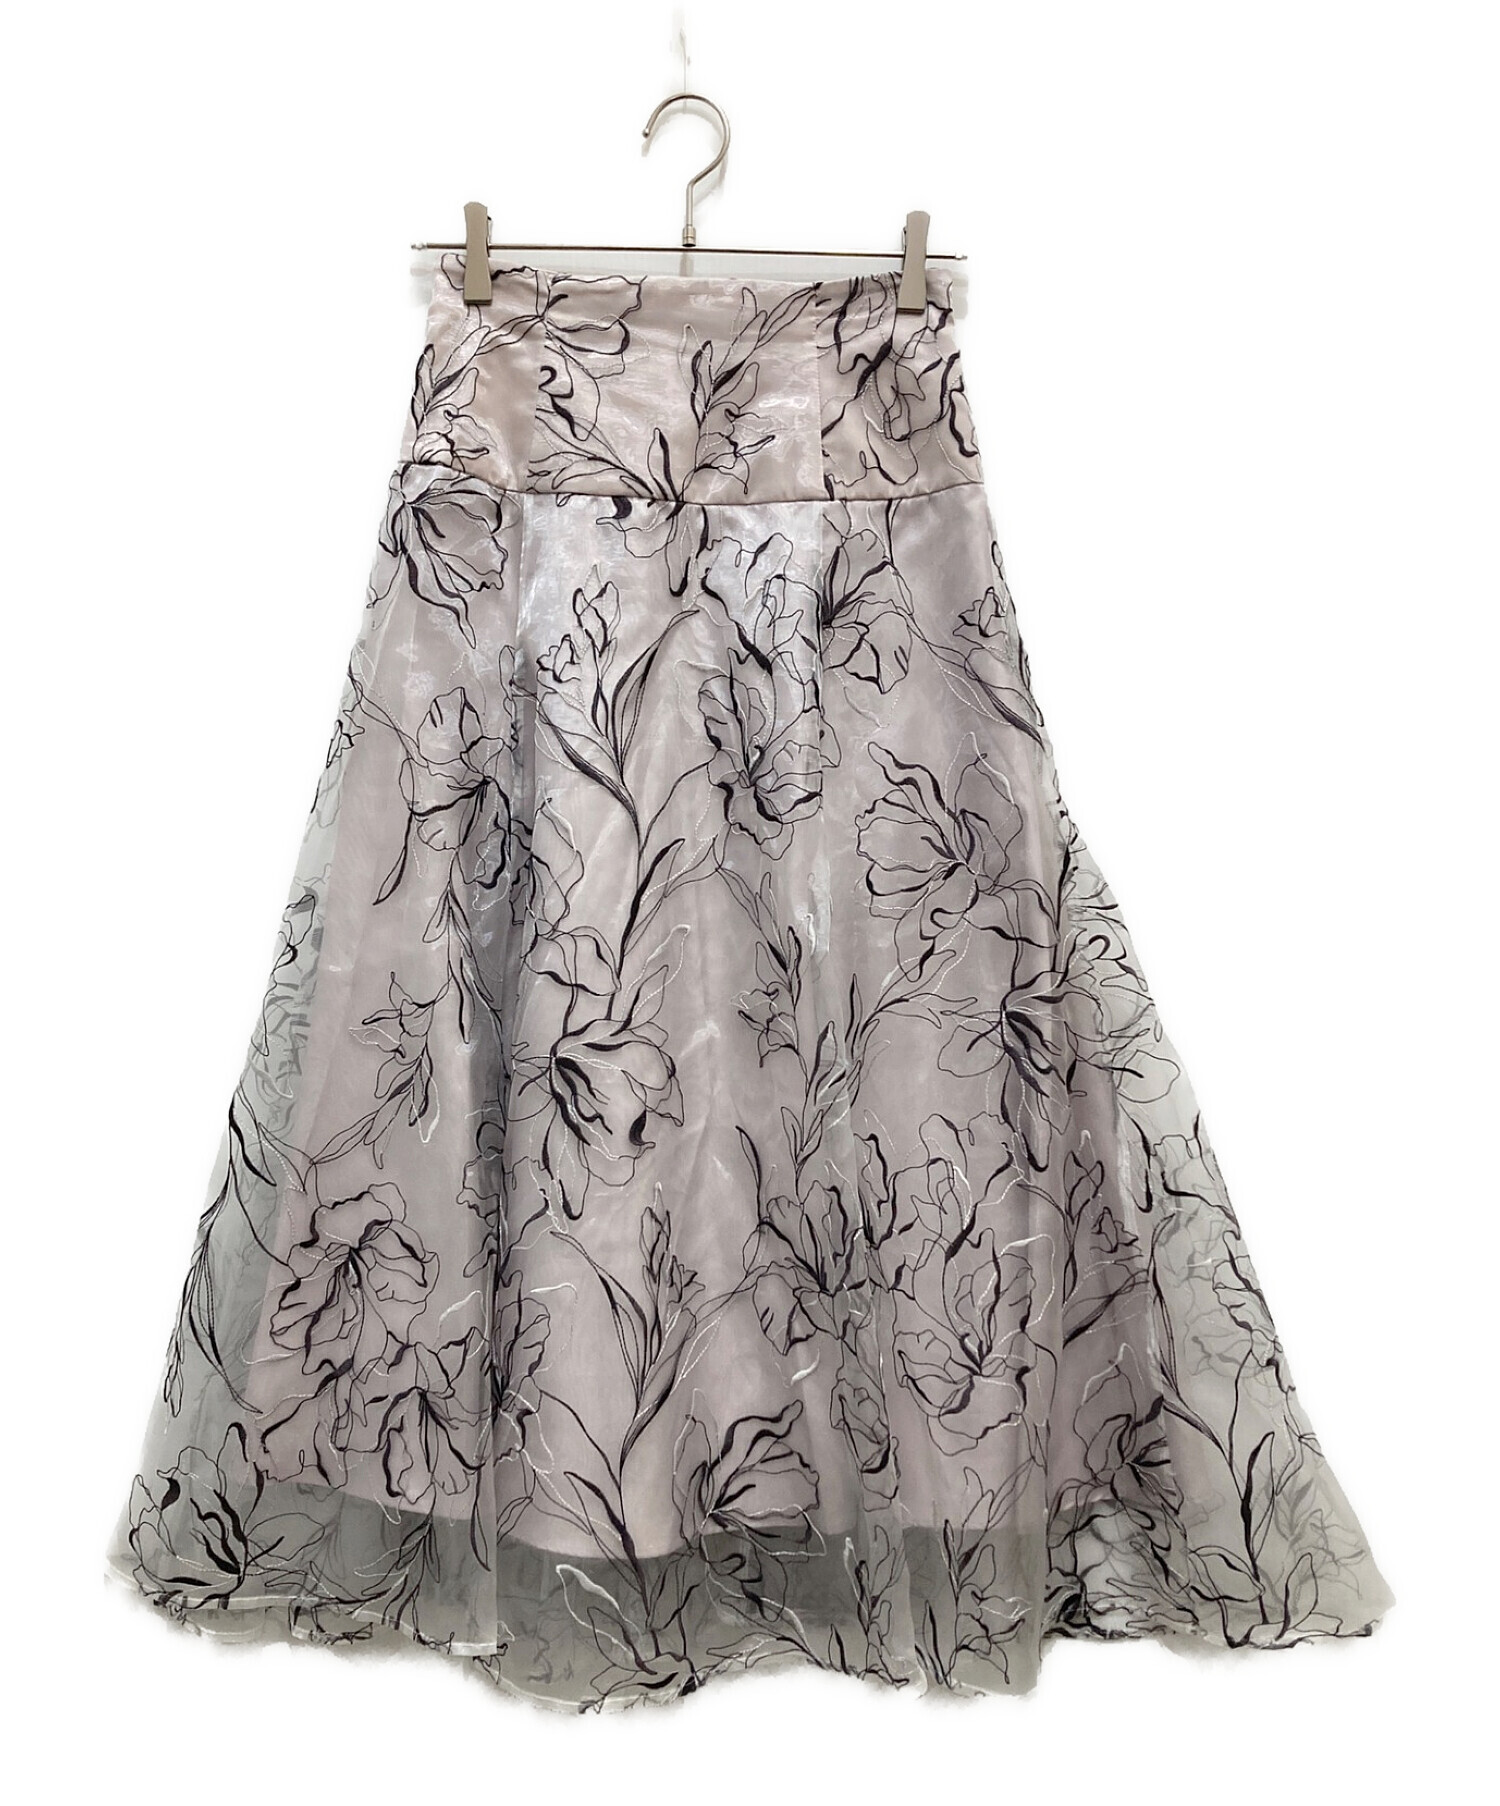 通販国産ピオニーライン刺繍スカート(タグ付き) スカート